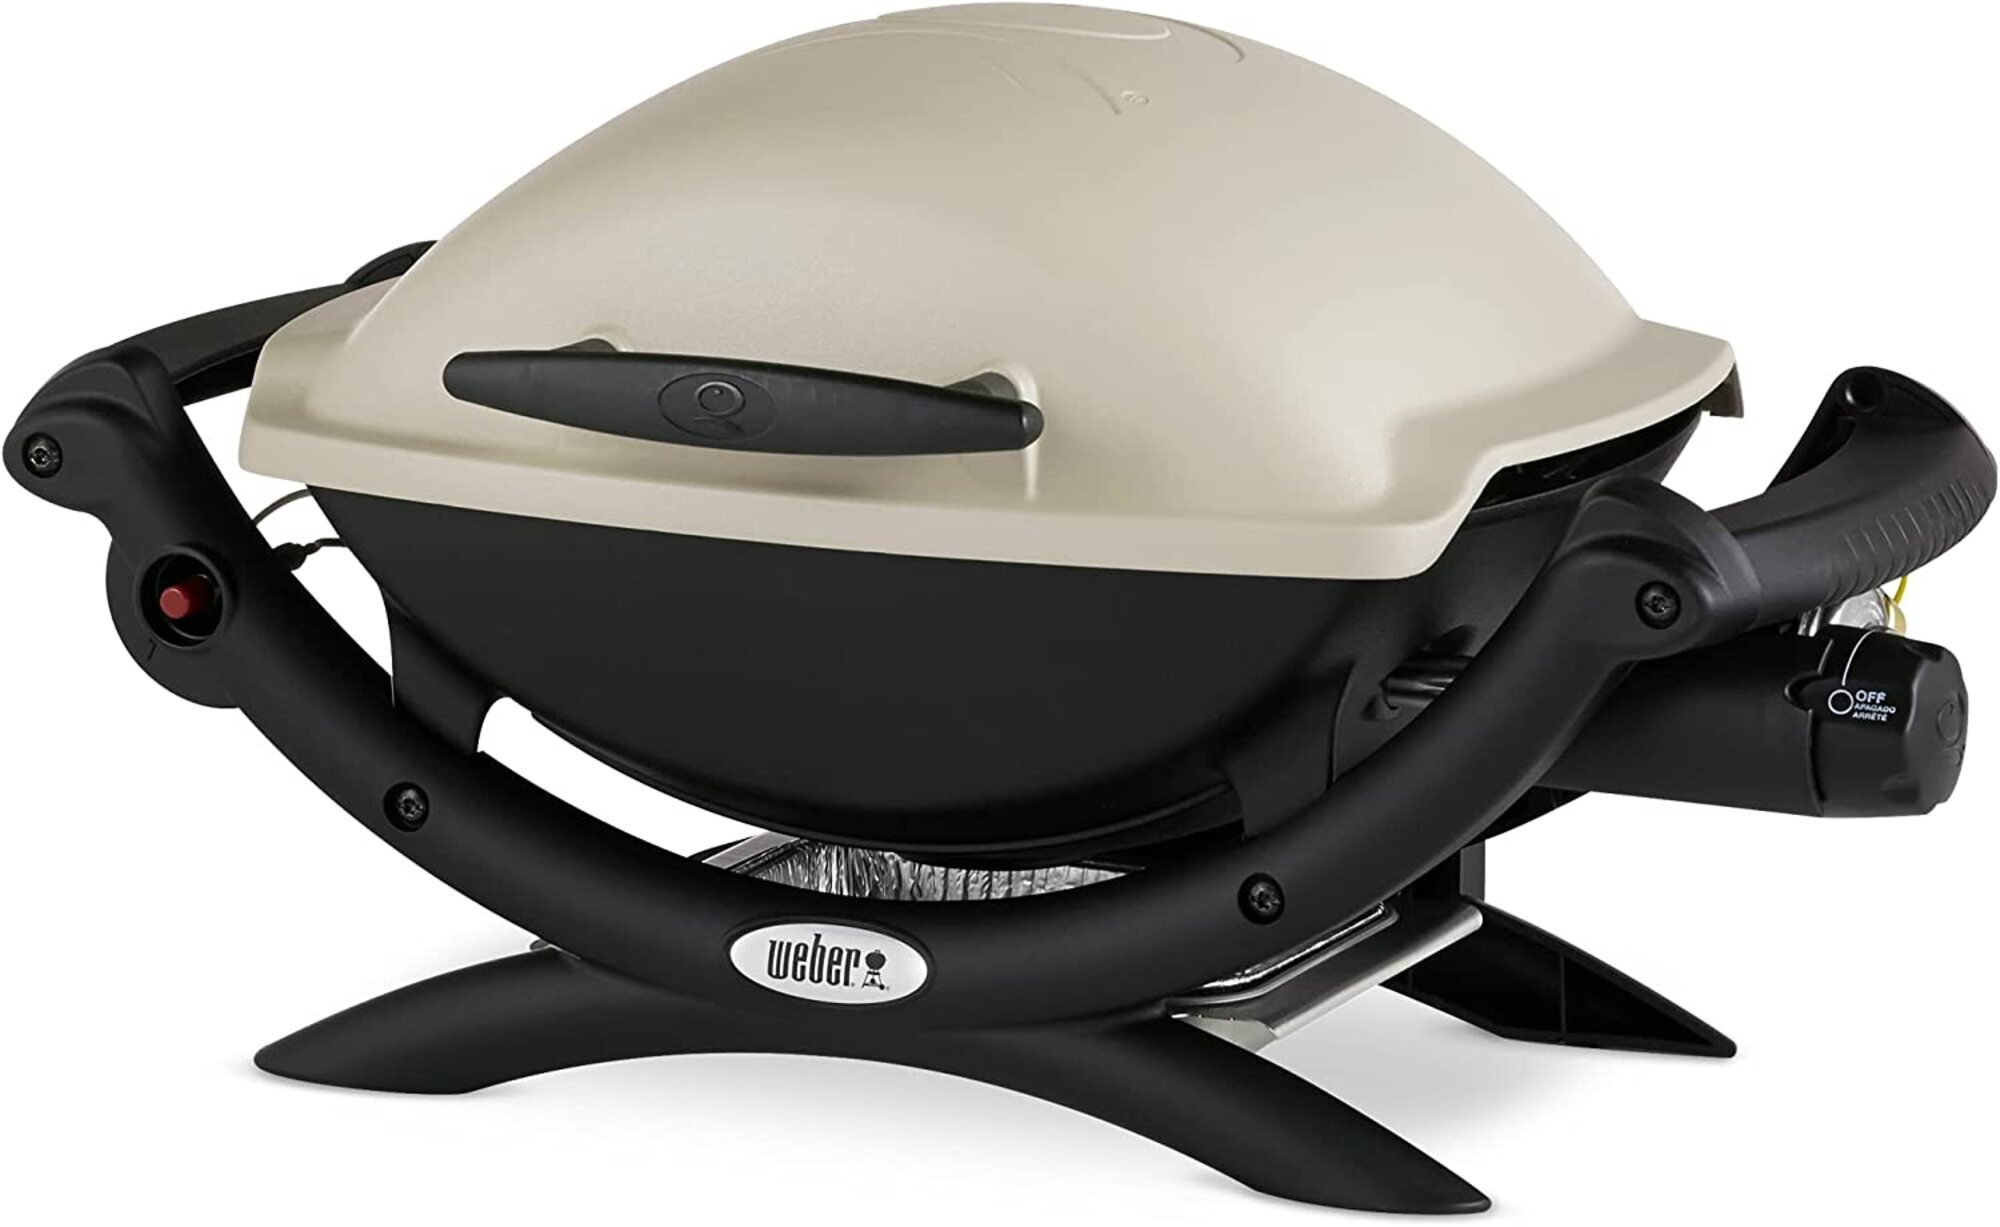 Bon plan : le barbecue Weber Q1000 est en promotion durant les soldes d'été © Amazon